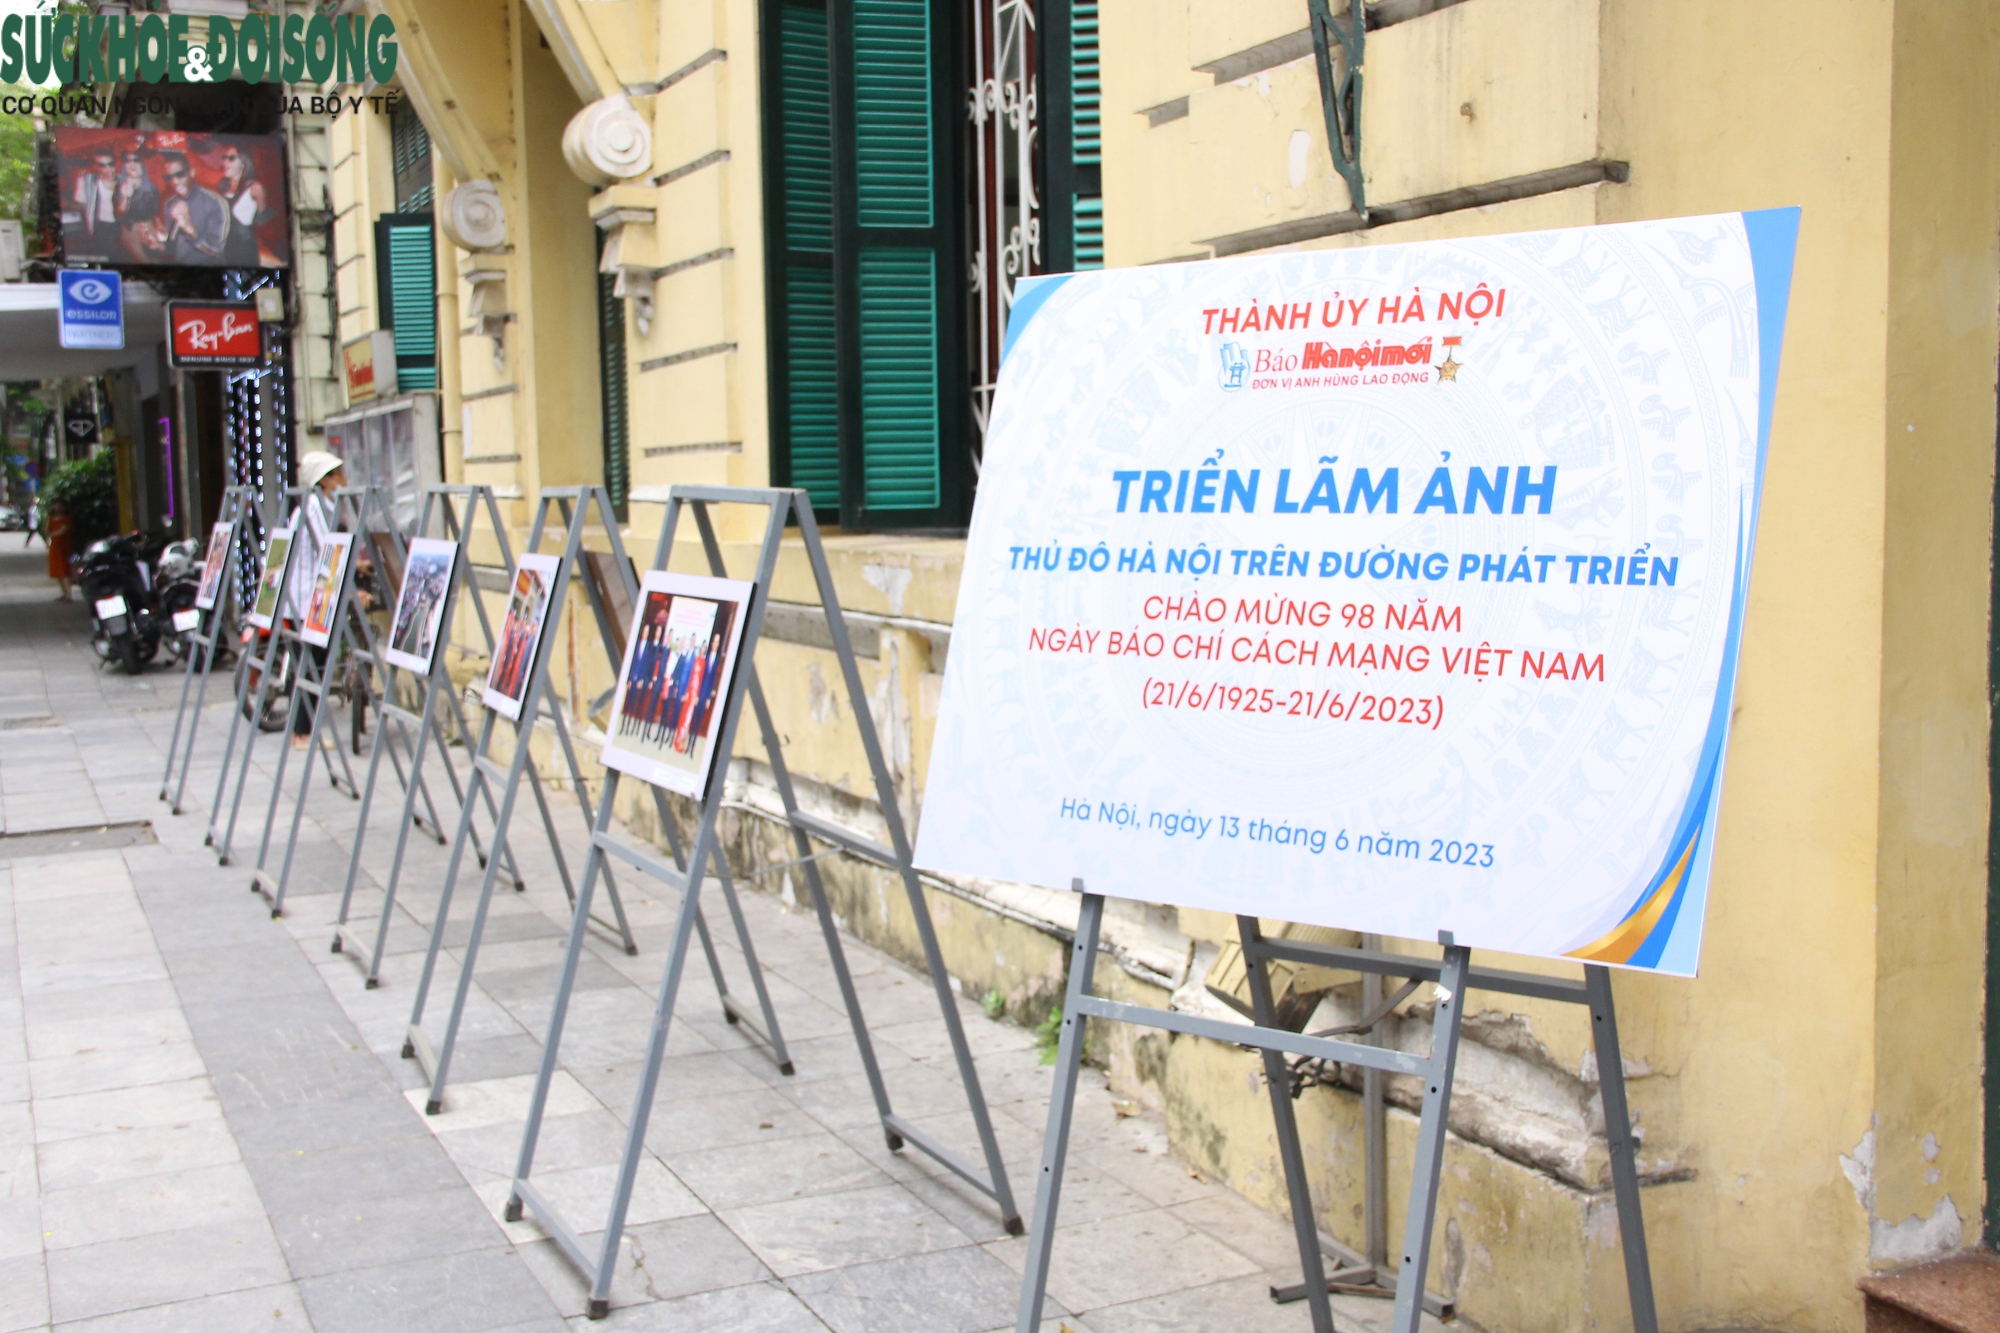 Độc đáo triển lãm ảnh nhân kỷ niệm 98 năm Ngày Báo chí cách mạng Việt Nam - Ảnh 2.